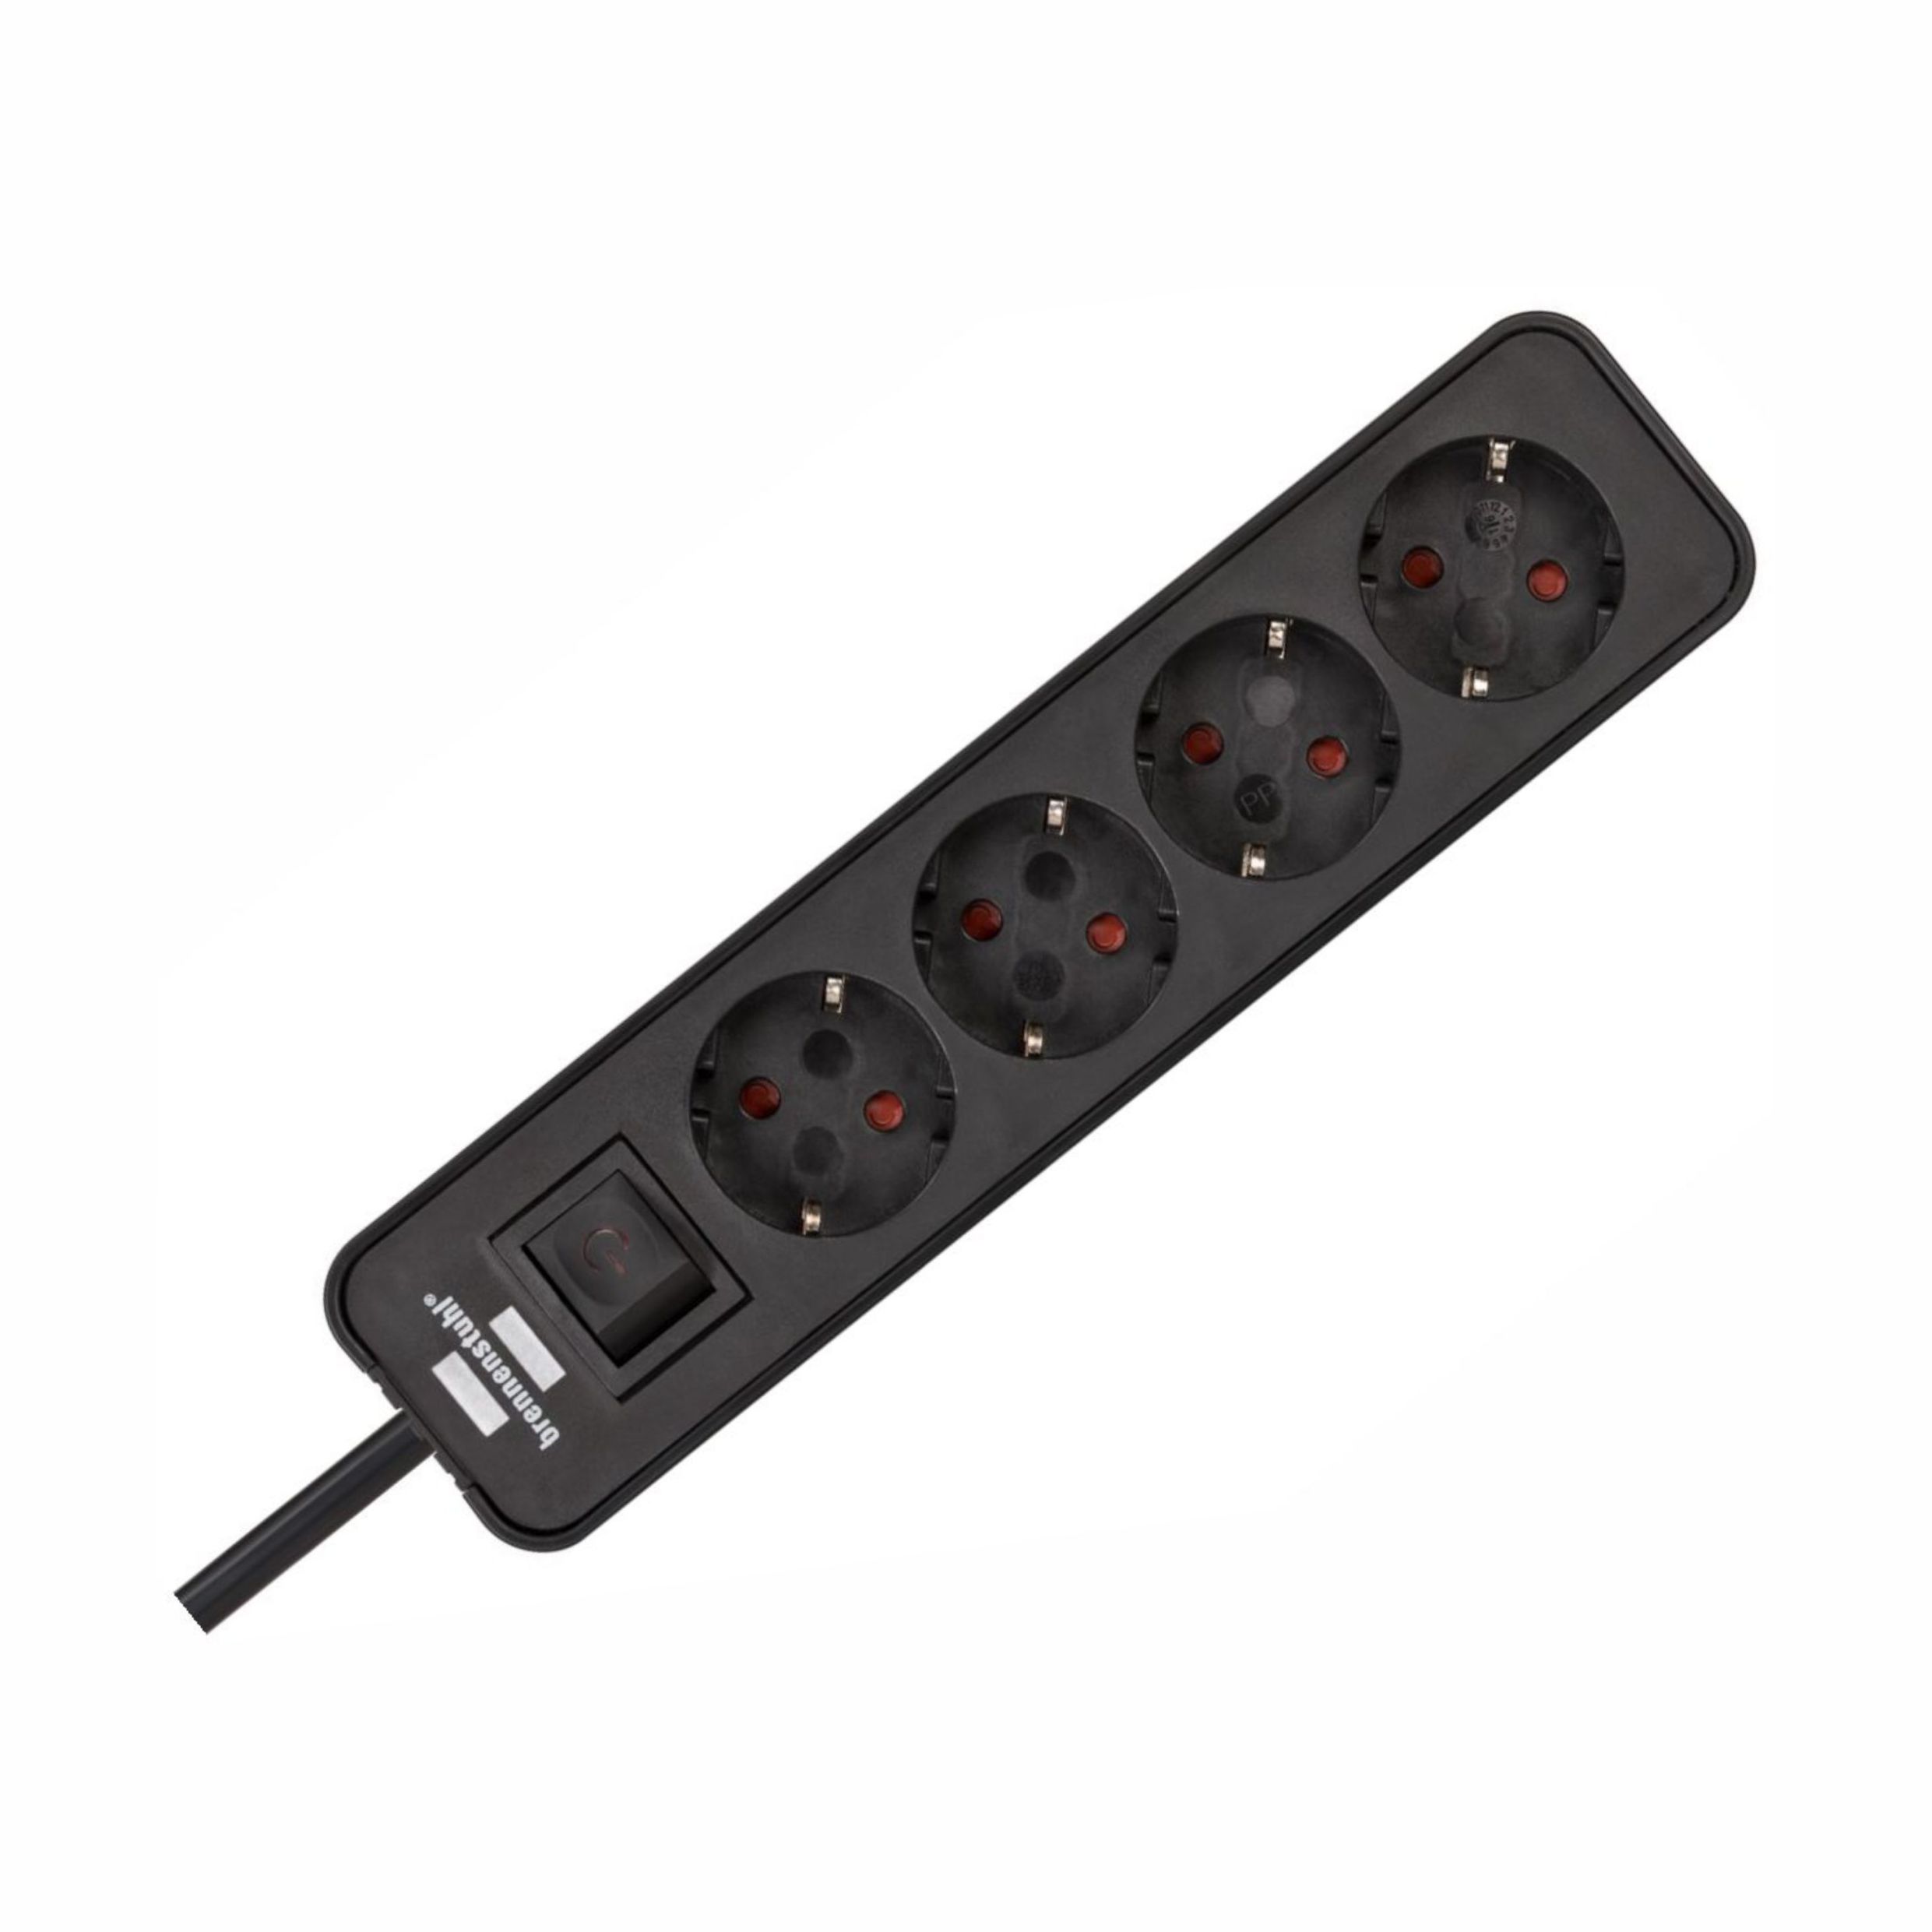 купить Удлинитель Ecolor с переключателем 4 розетки; 1.5 метра; 2 USB для зарядки,черно-красный